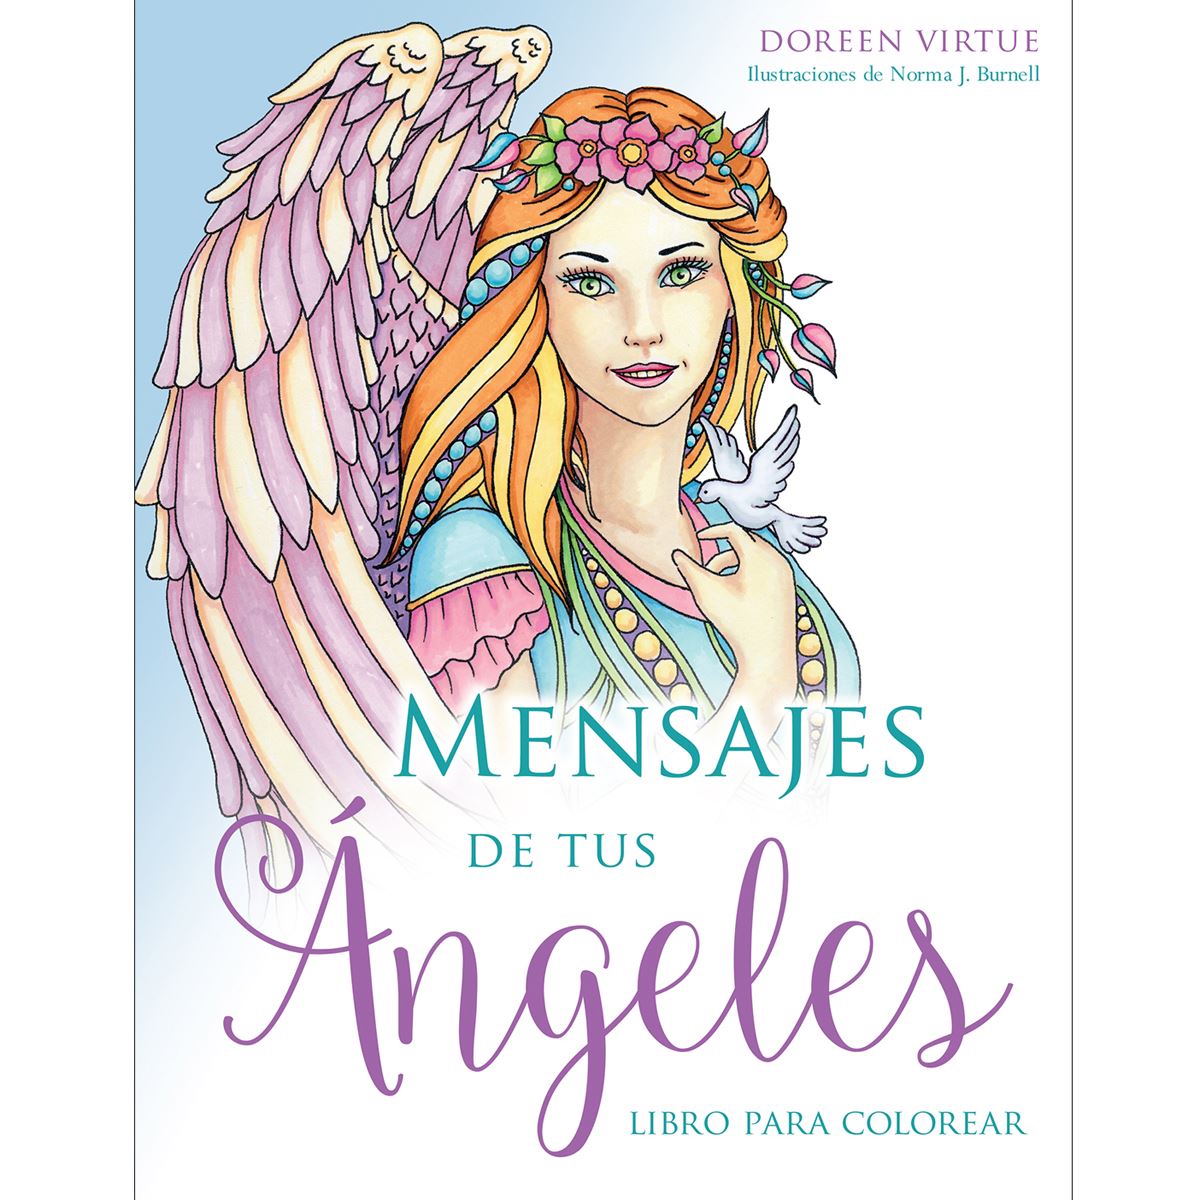 Mensaje de tus ángeles libro para colorear